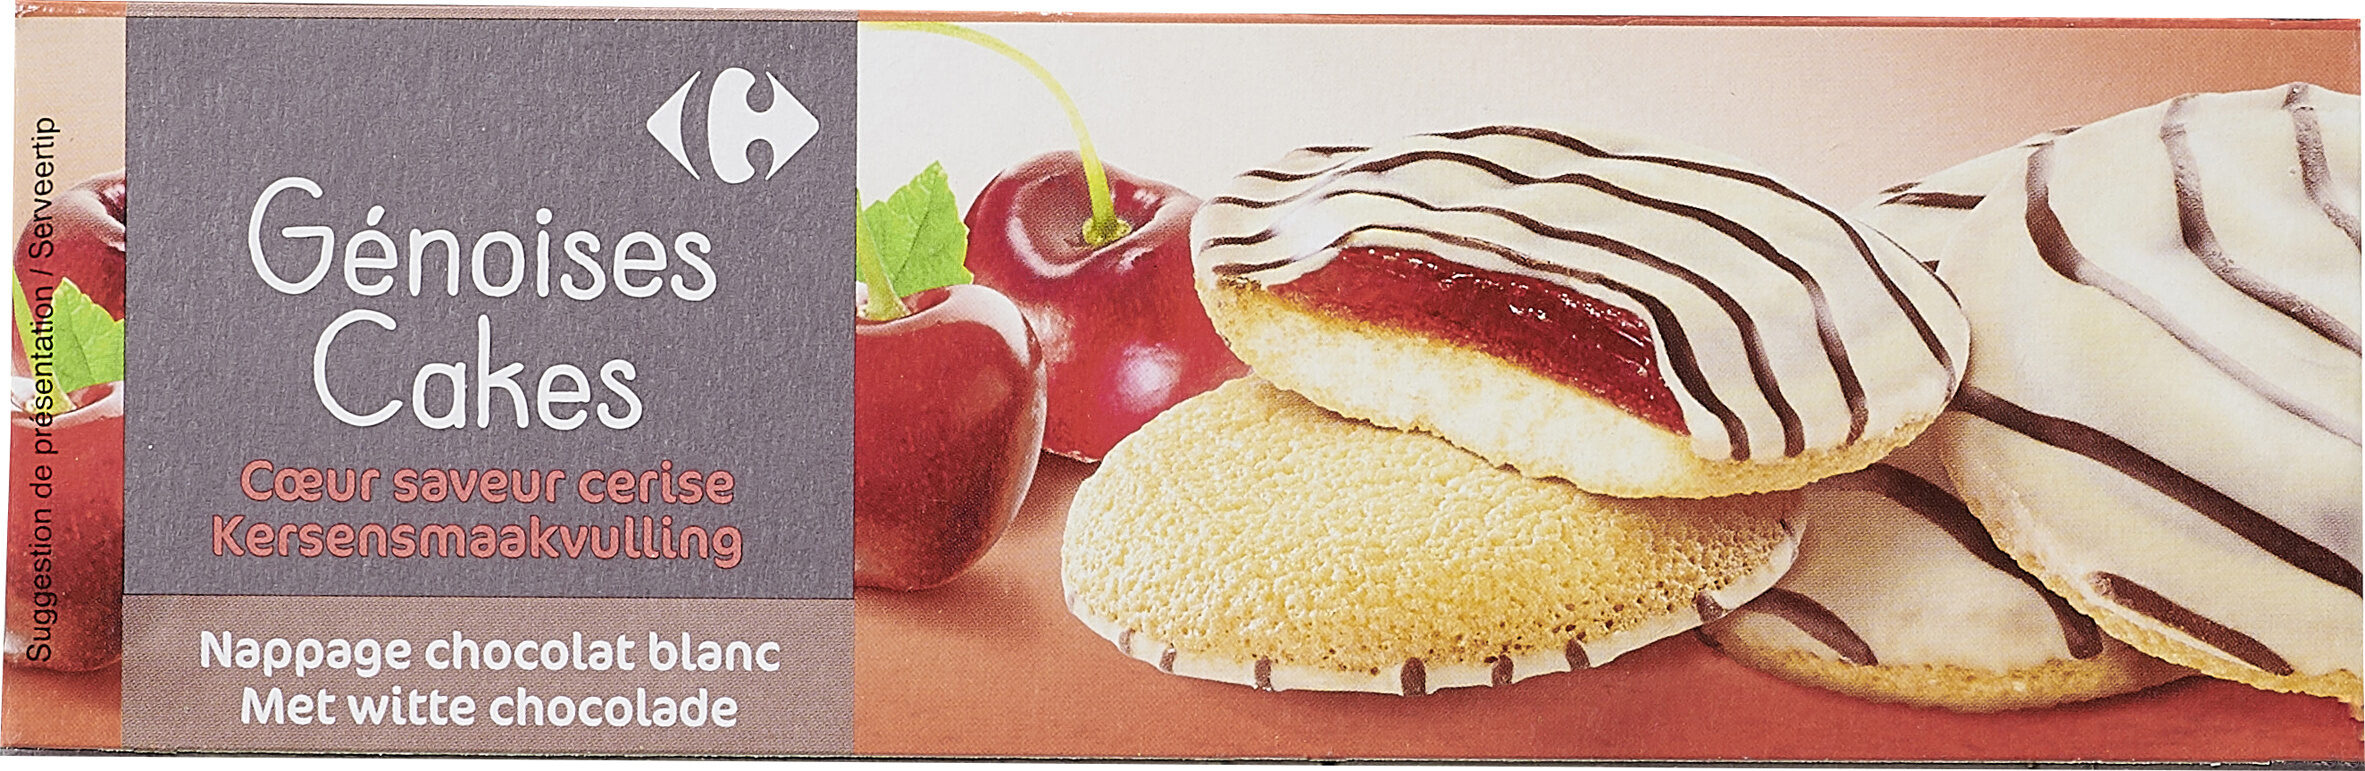 Genoises cakes saveur cerise - Product - fr